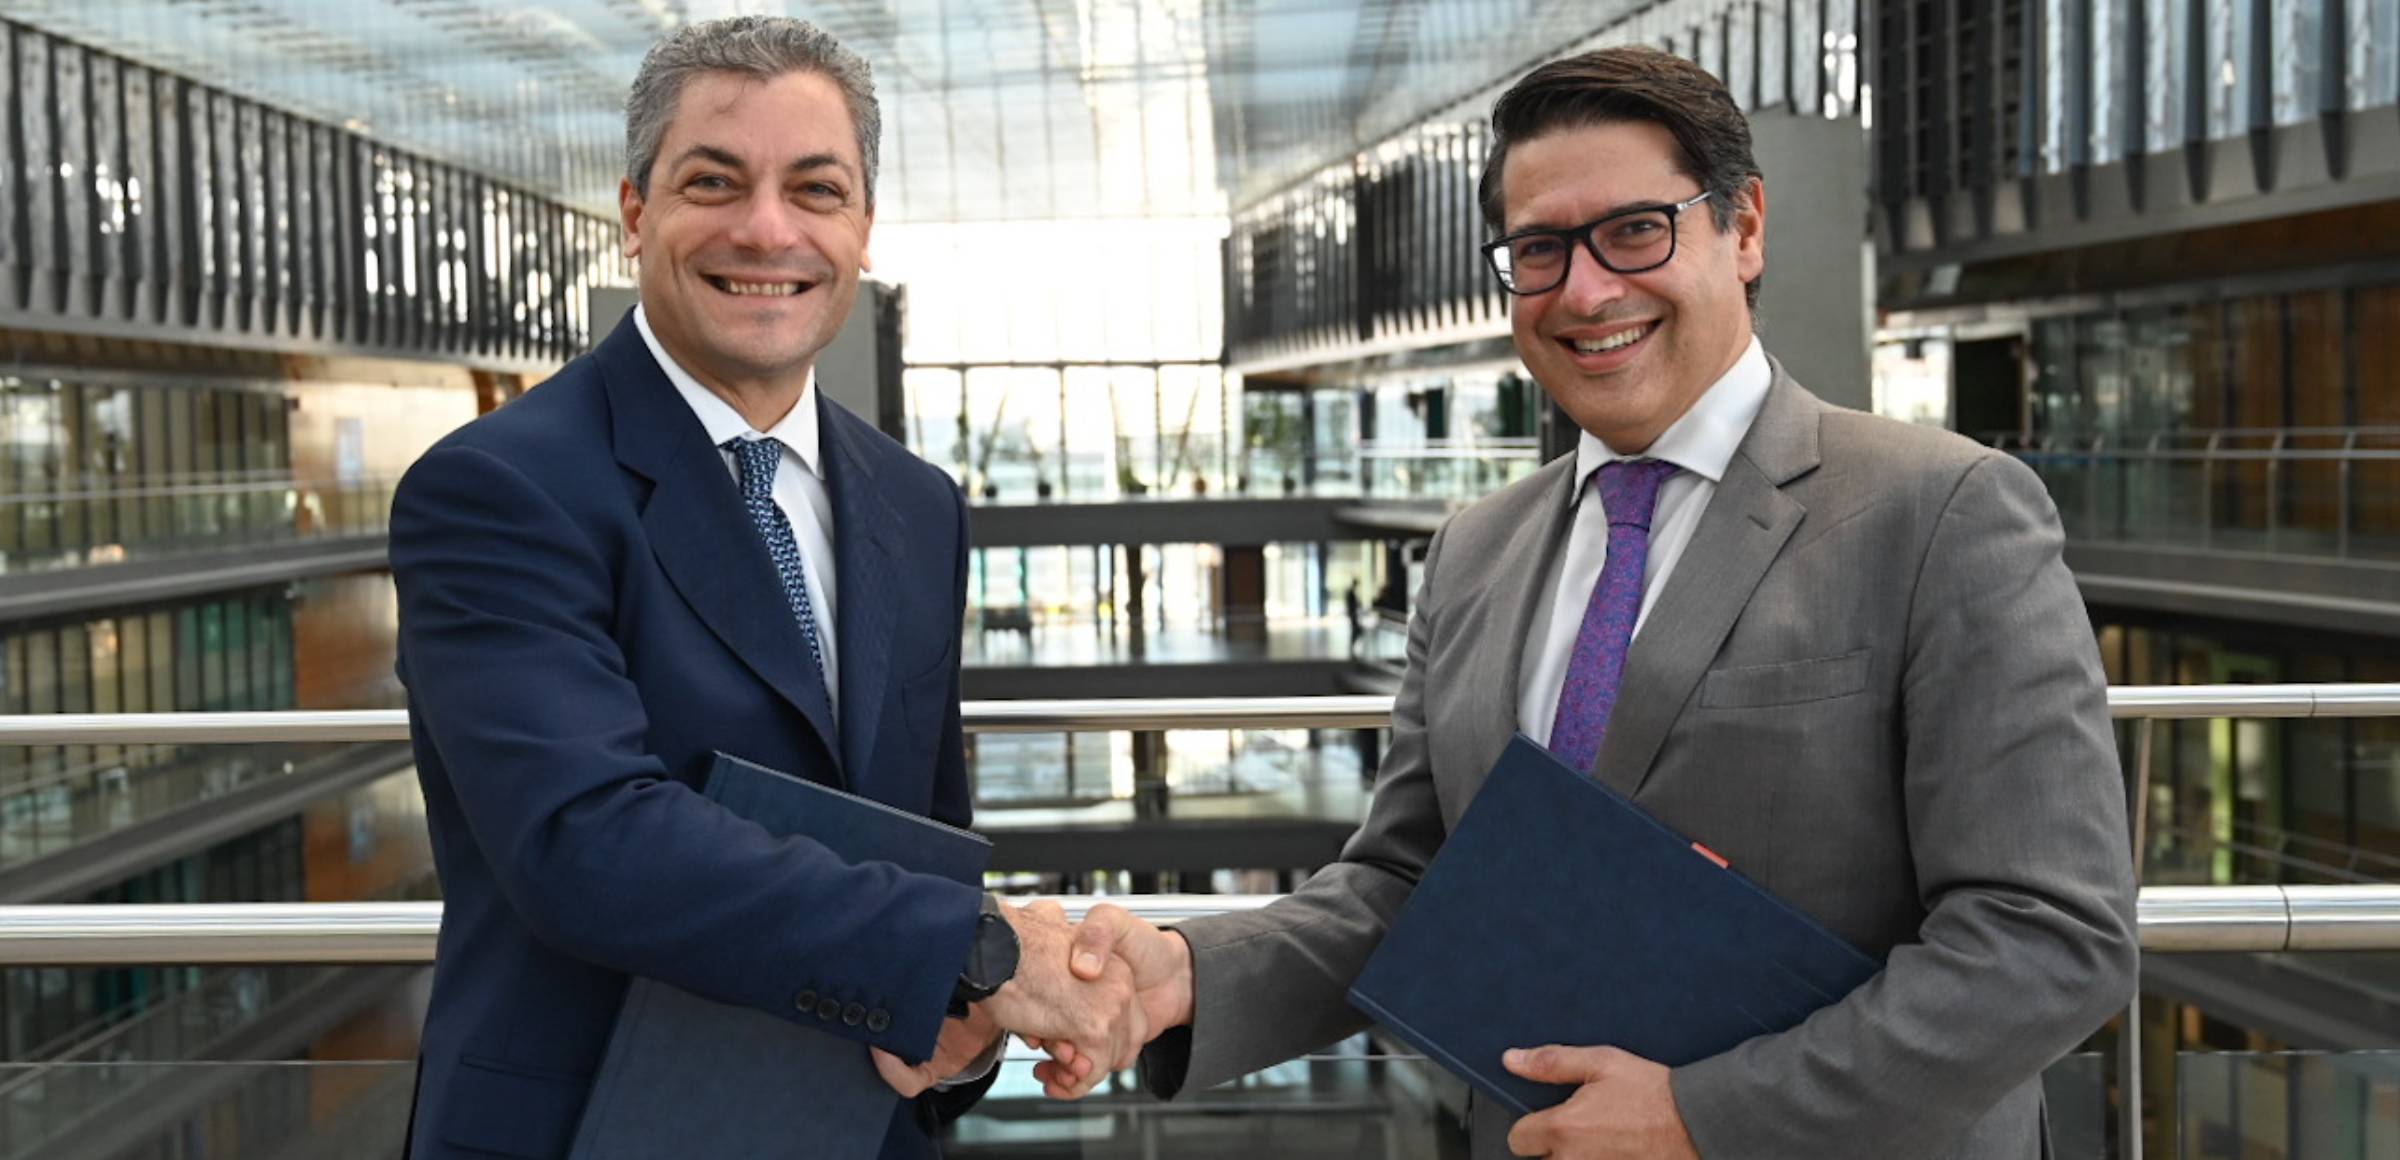 El Director General Financiero de Endesa, Luca Passa con el vicepresidente del BEI, Ricardo Mourinho Félix, en la sede de Endesa en Madrid.